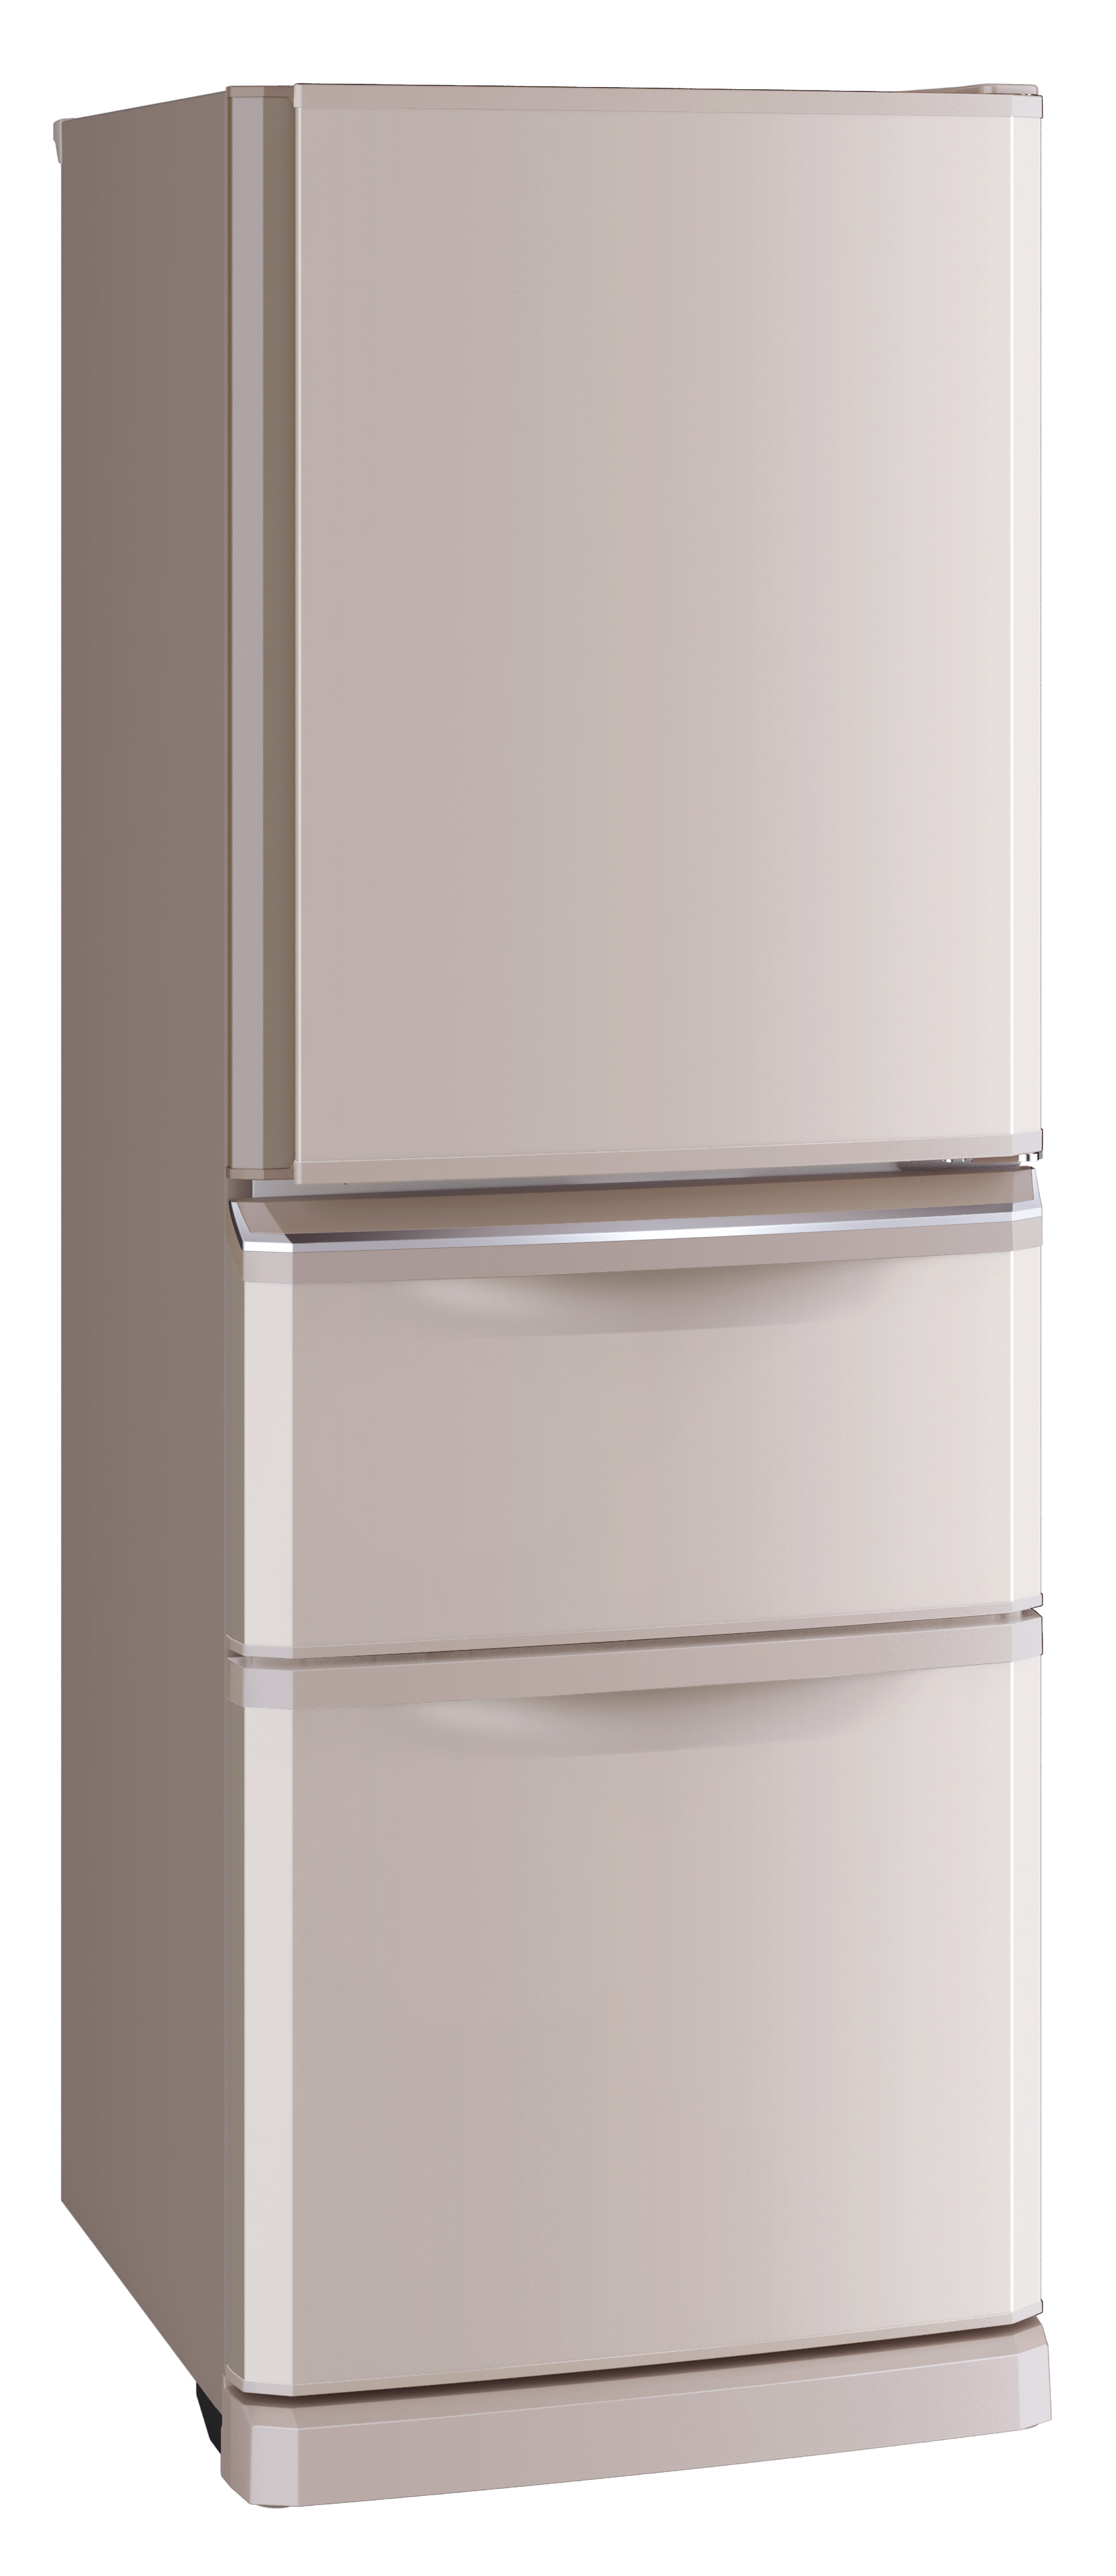 Узкие холодильники до 55 см. Холодильник Mitsubishi Electric Mr-cxr46en-PS. Холодильник Mitsubishi Electric Mr-cxr46en-w. Холодильник Tesler RFD-361i Crystal Beige. Холодильник Mitsubishi Electric Mr-cxr46en-ob-r.